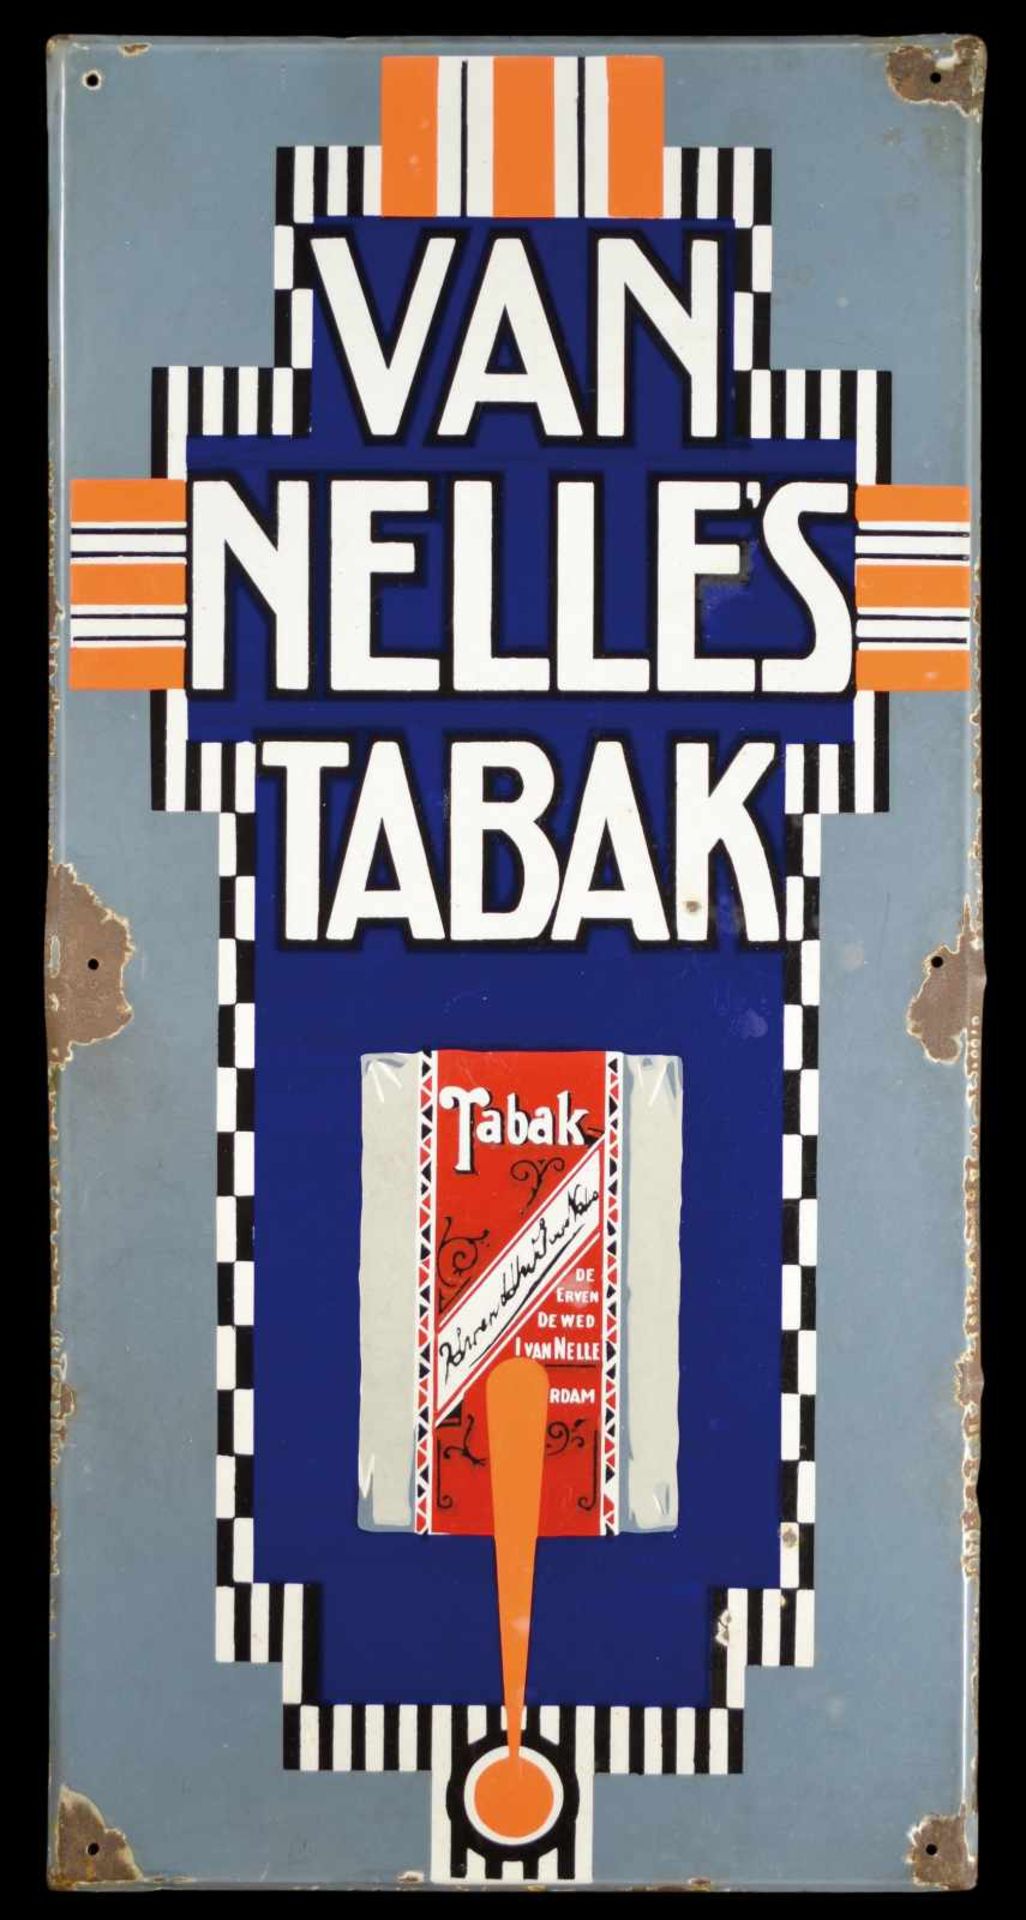 VAN NELLE's TABAK (2) Emailschild, schräg abgekantet, dick schabloniert, Niederlande um 1920, 50 x